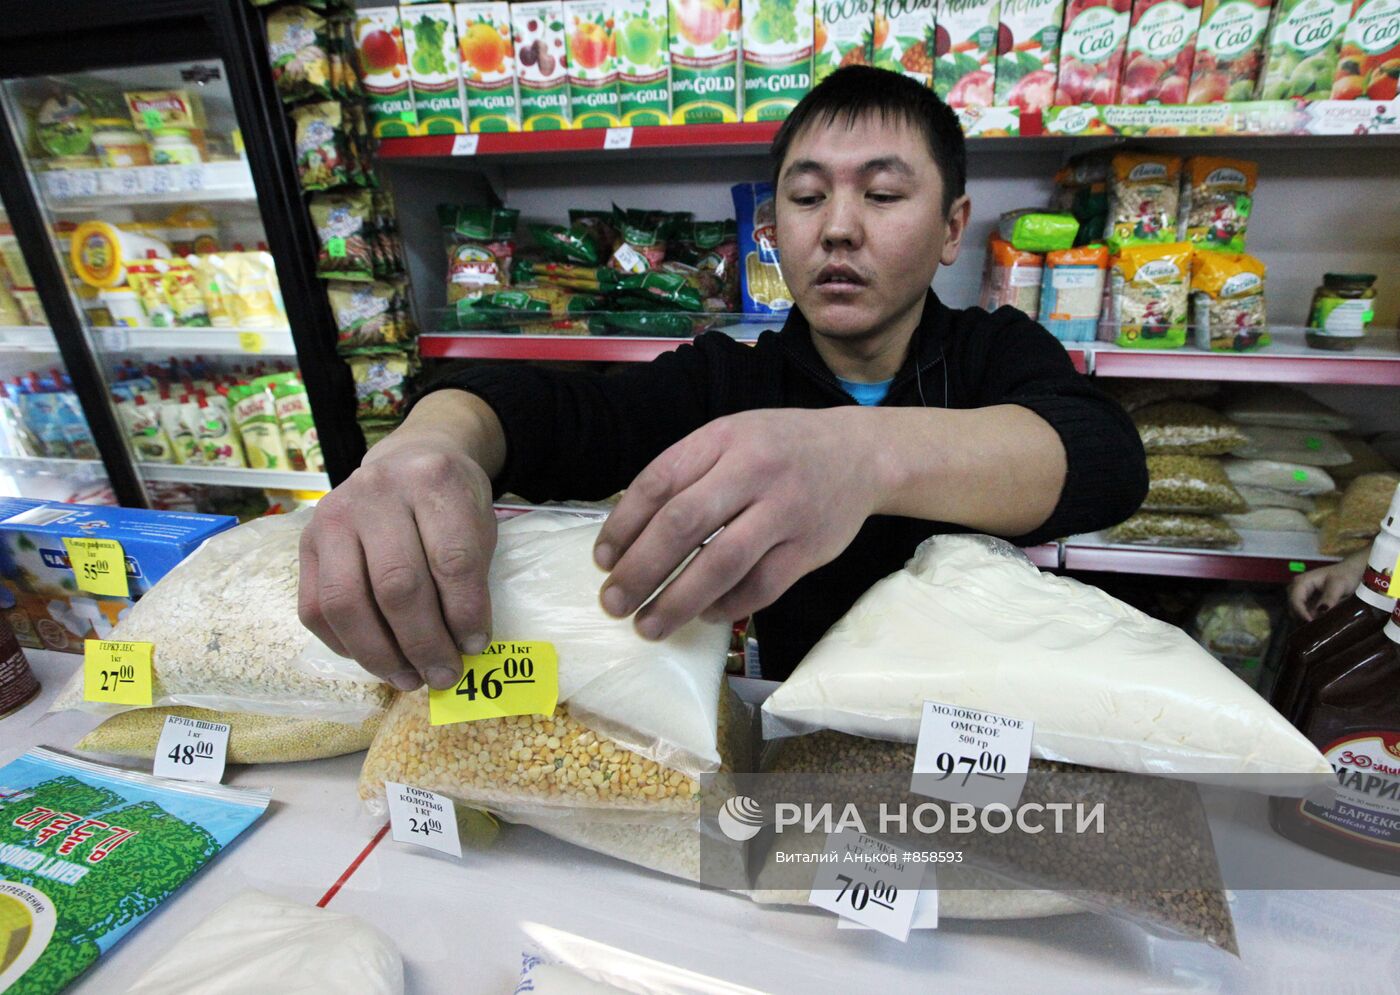 Работа социального рынка "Ближний" во Владивостоке